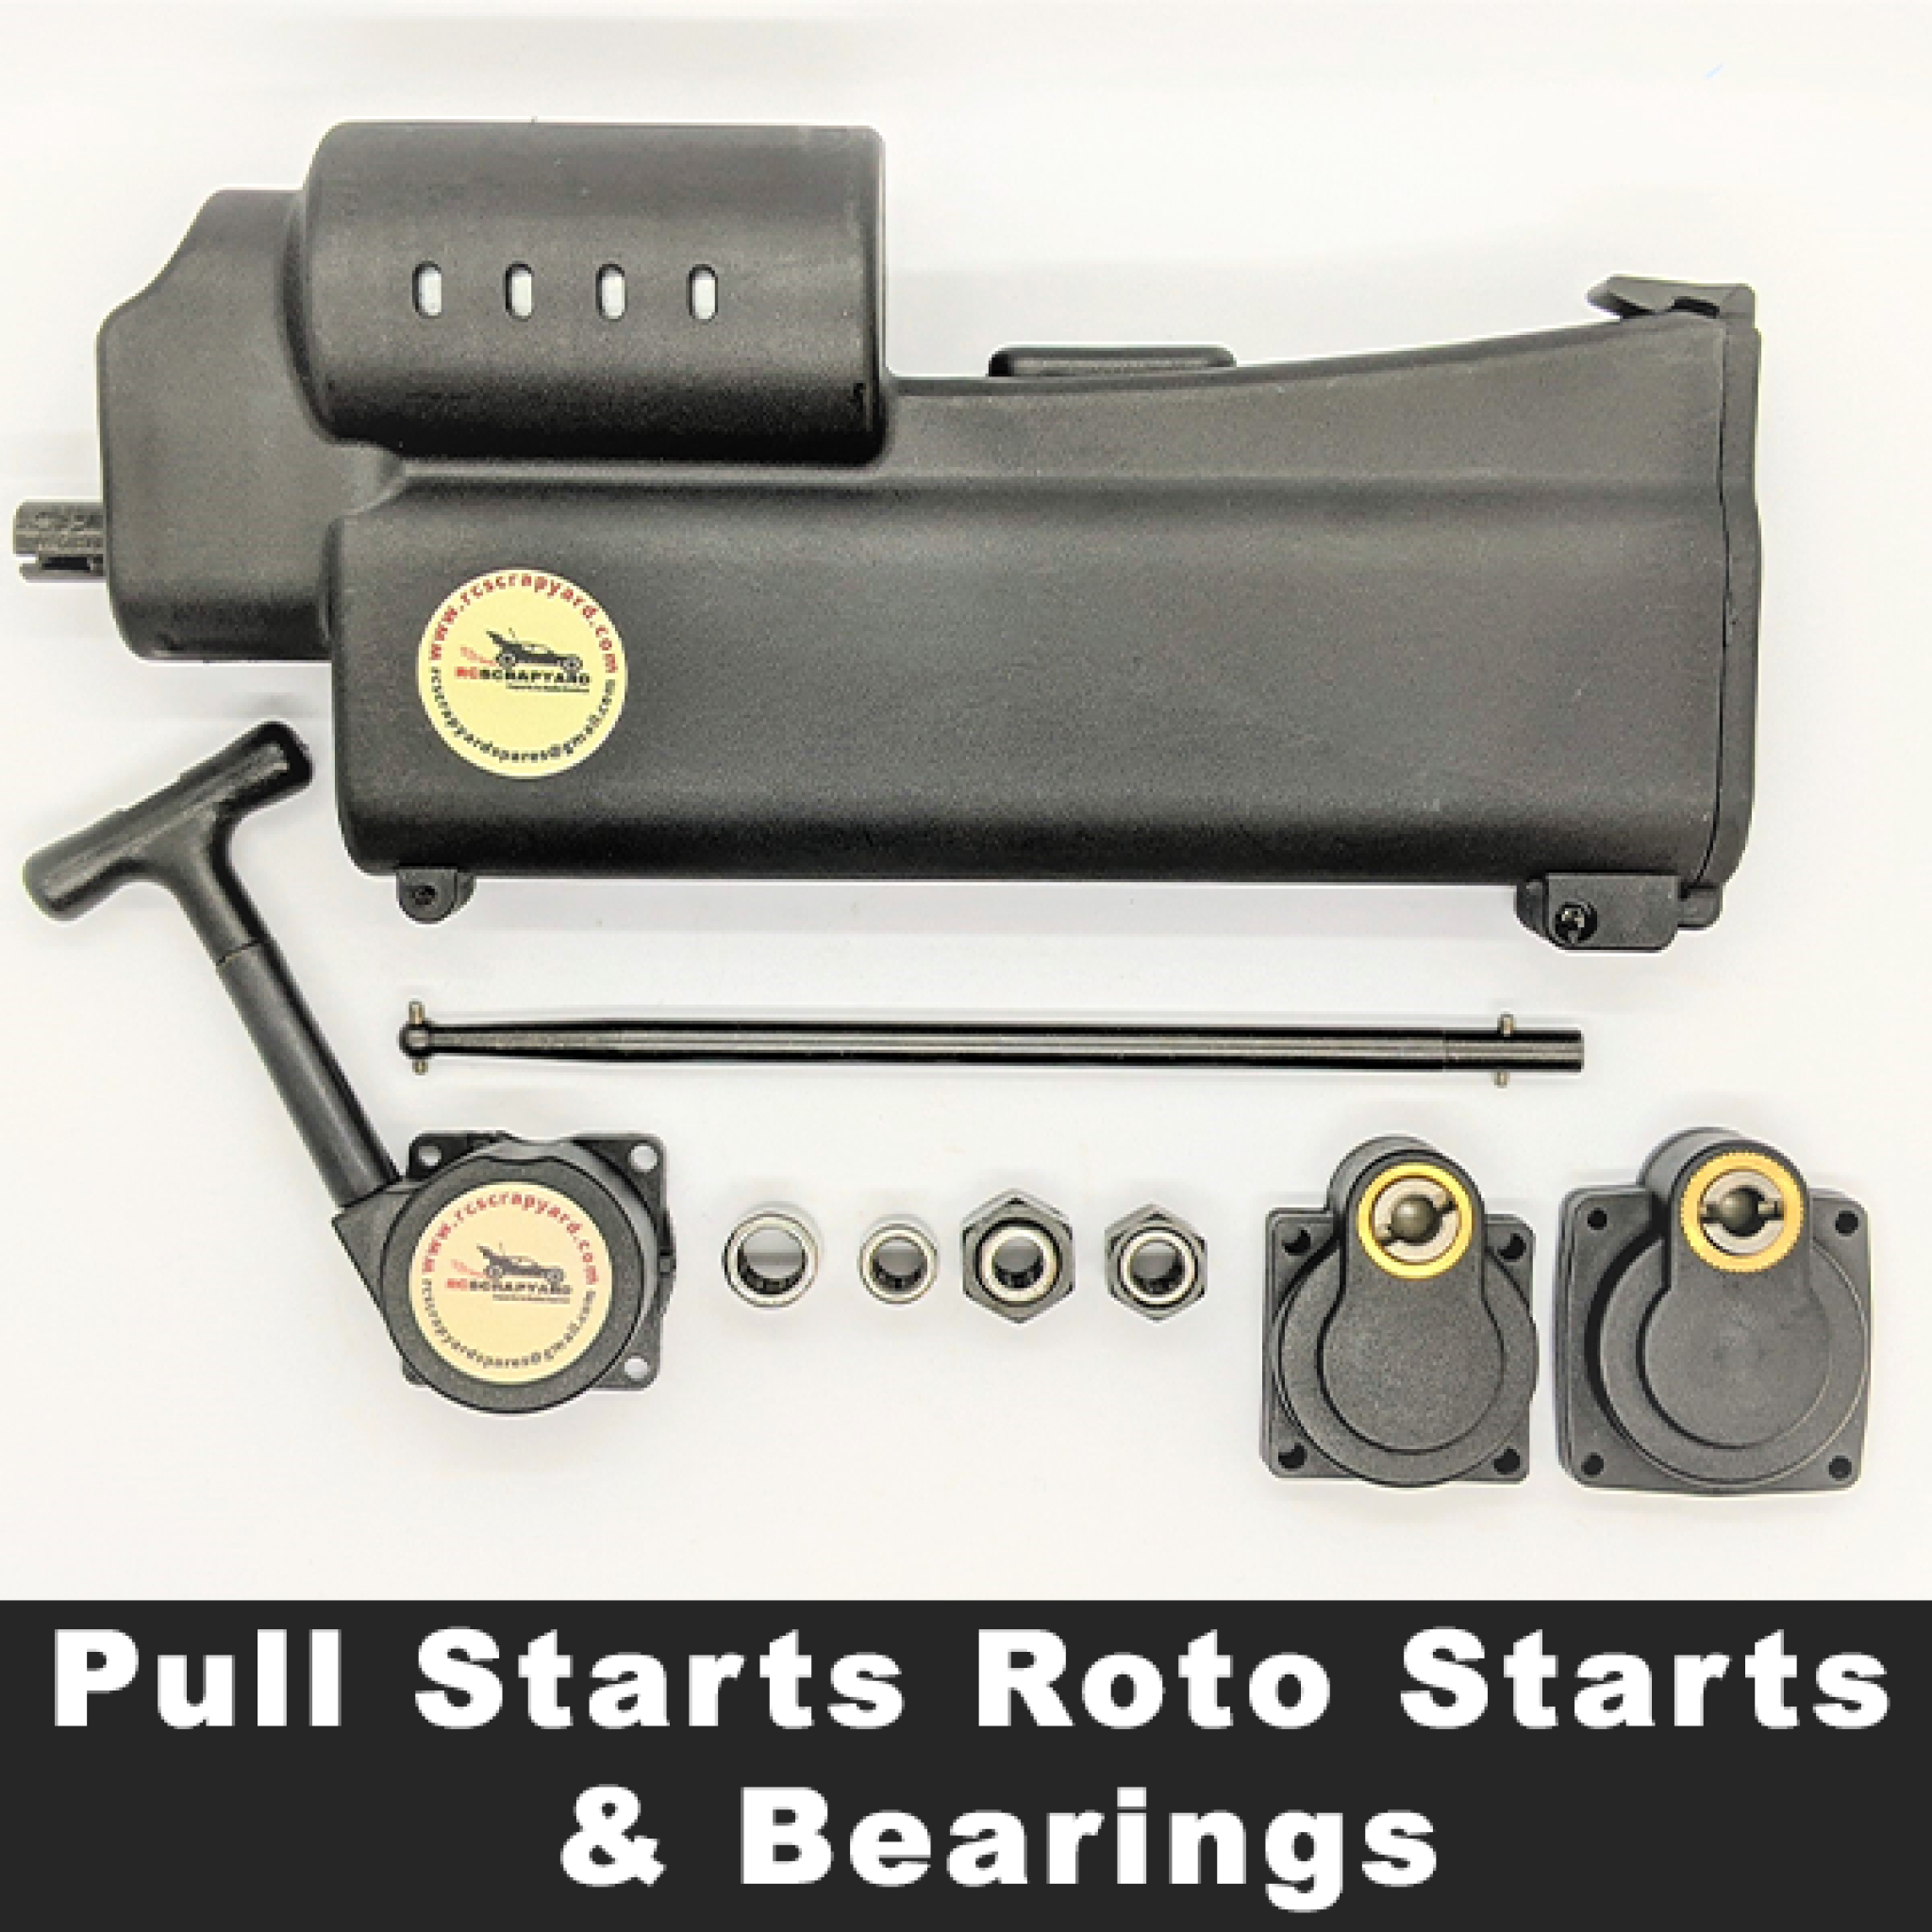 Pull Starts Roto Starts & Bearings.png